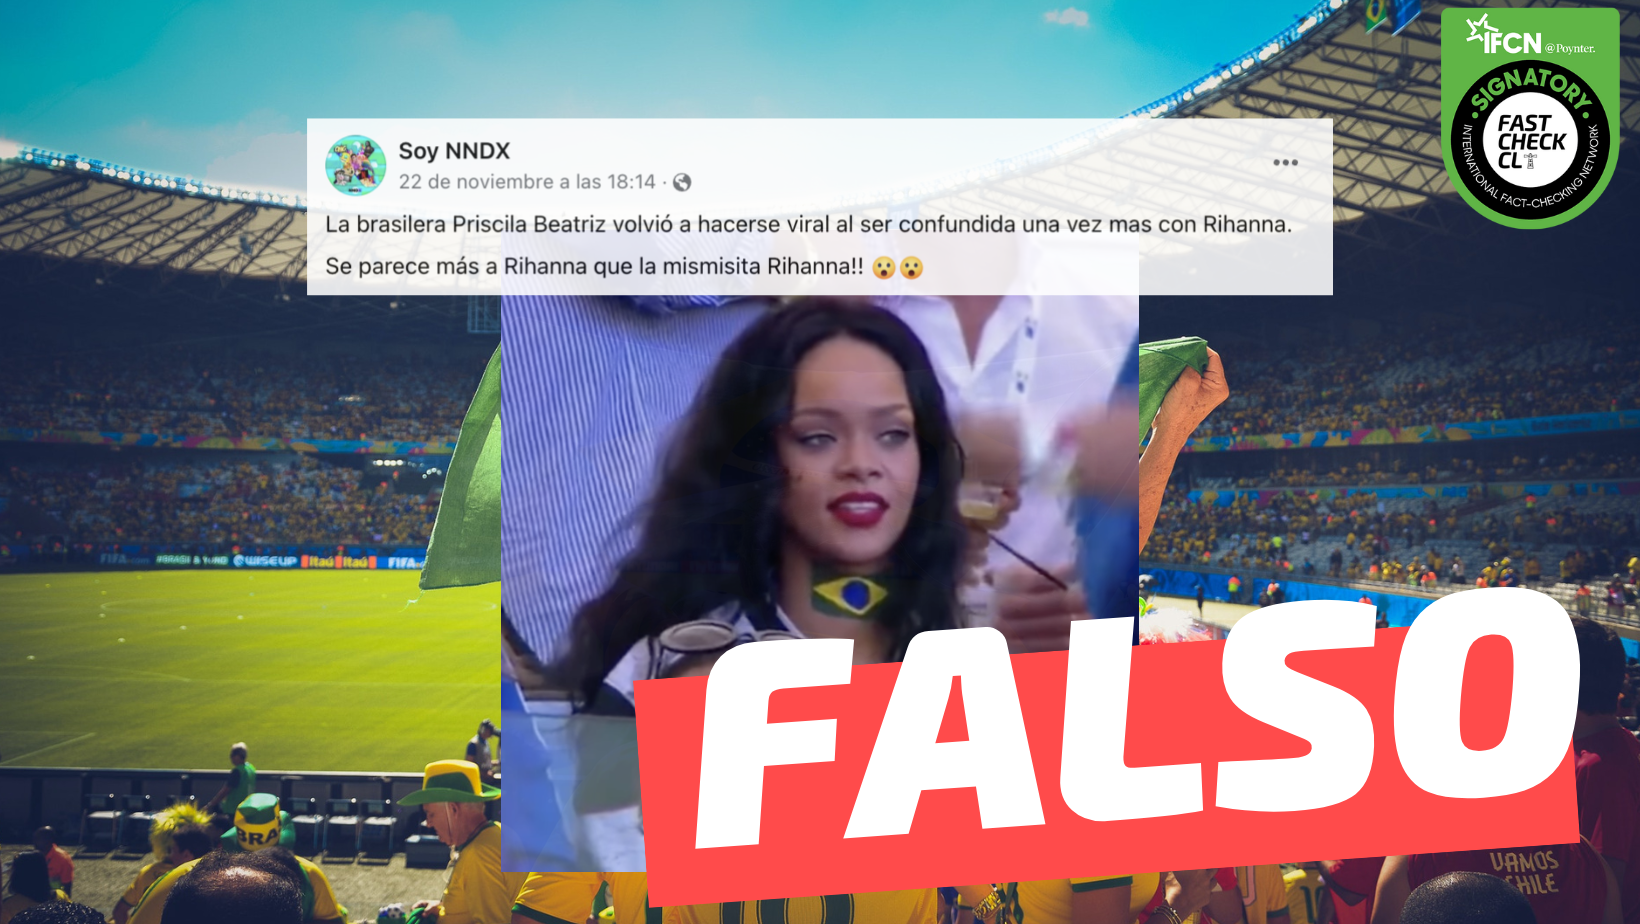 You are currently viewing (Video) “La brasilera Priscila Beatriz volvi贸 a hacerse viral al ser confundida una vez m谩s con Rihanna”: #Falso